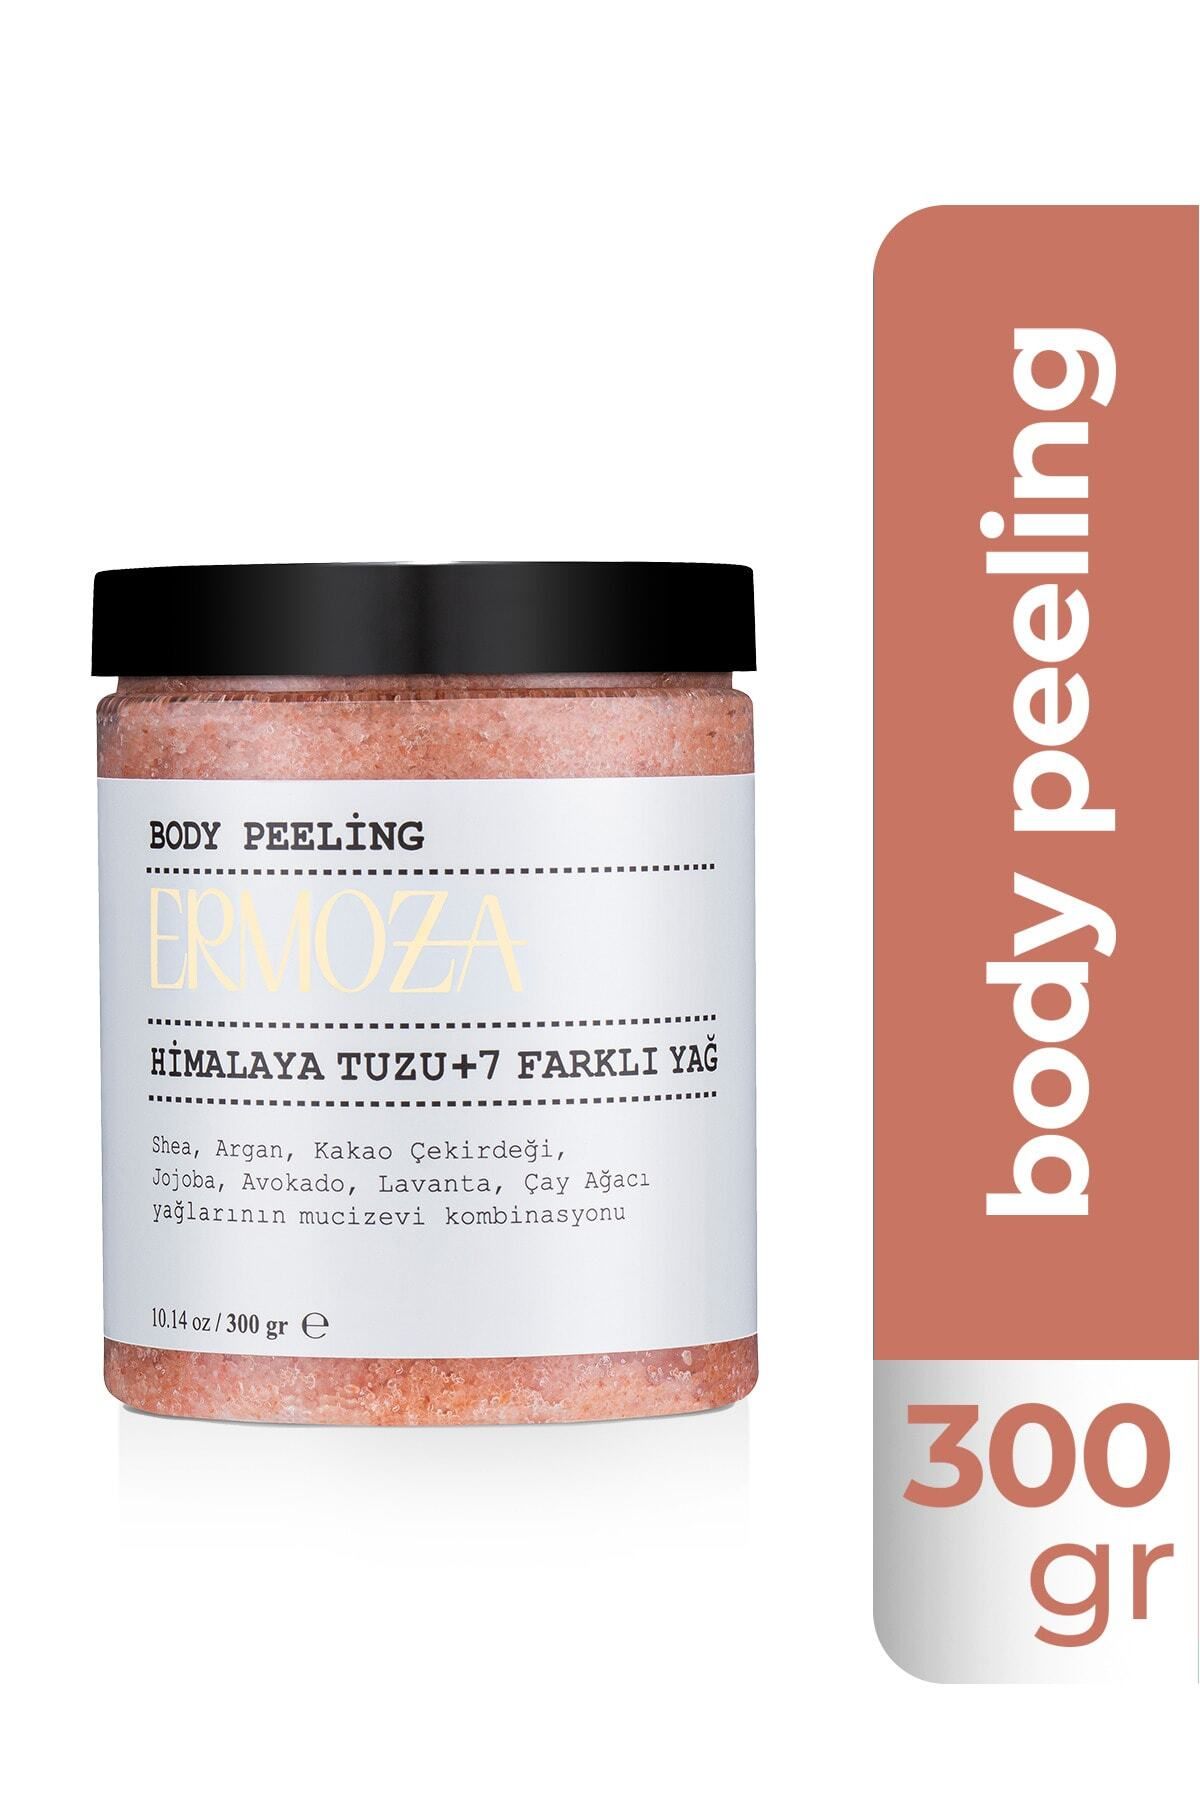 Ermoza Kozmetik Body Peeling Himalaya Tuzu - Hyaluronik Asit Ve 7 Farklı Yağ